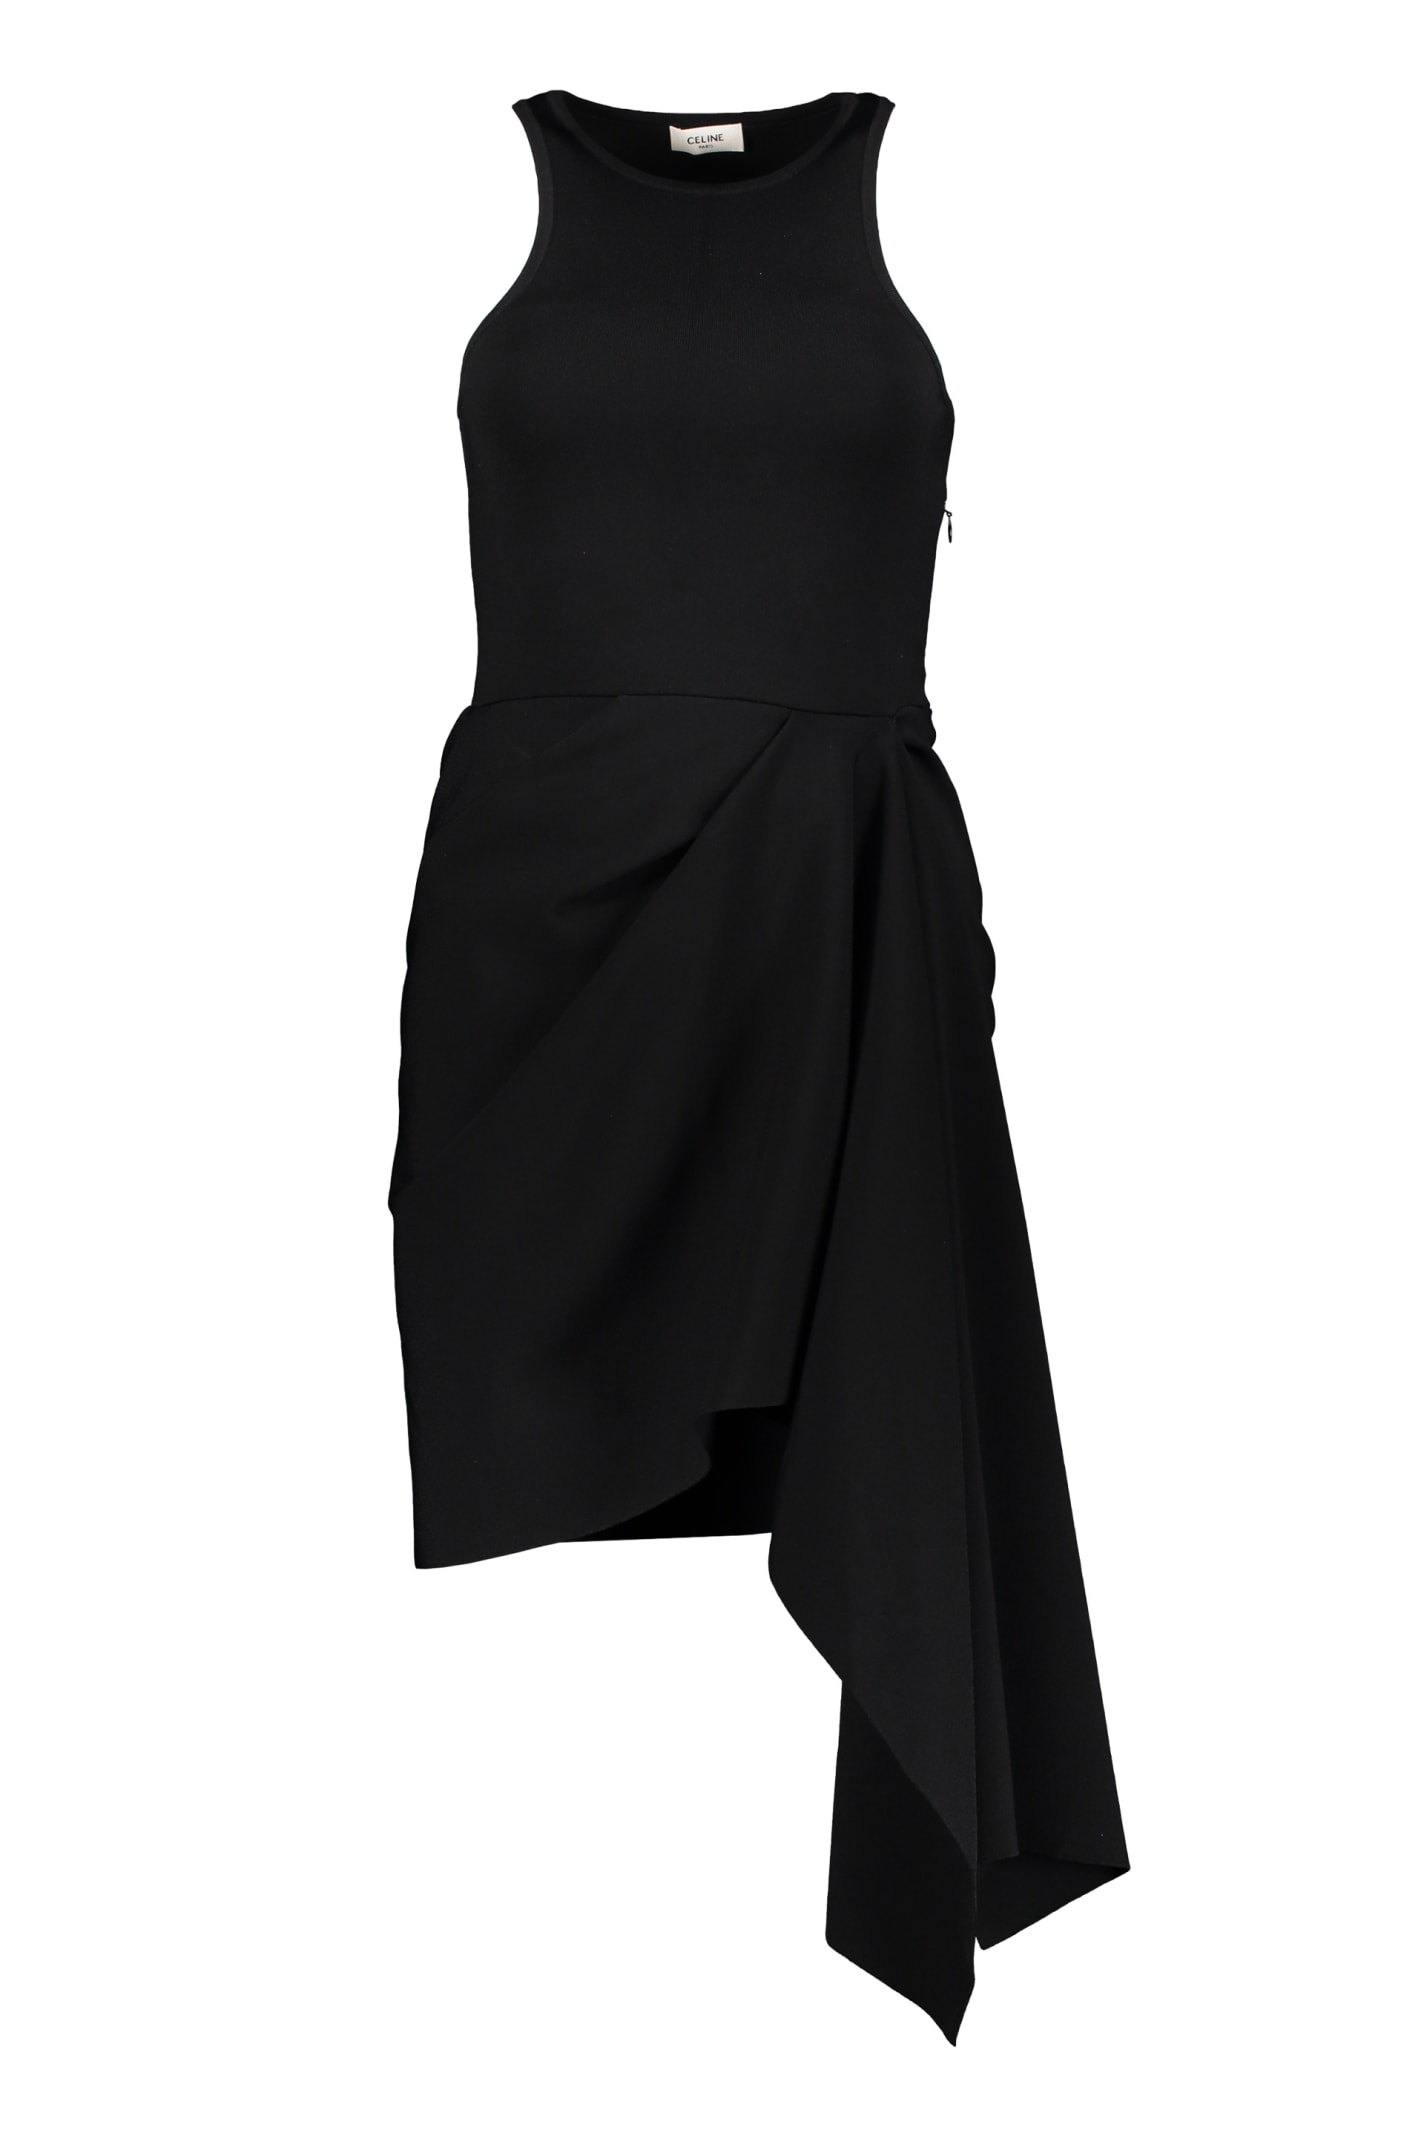 Celine Draped Dress In Black